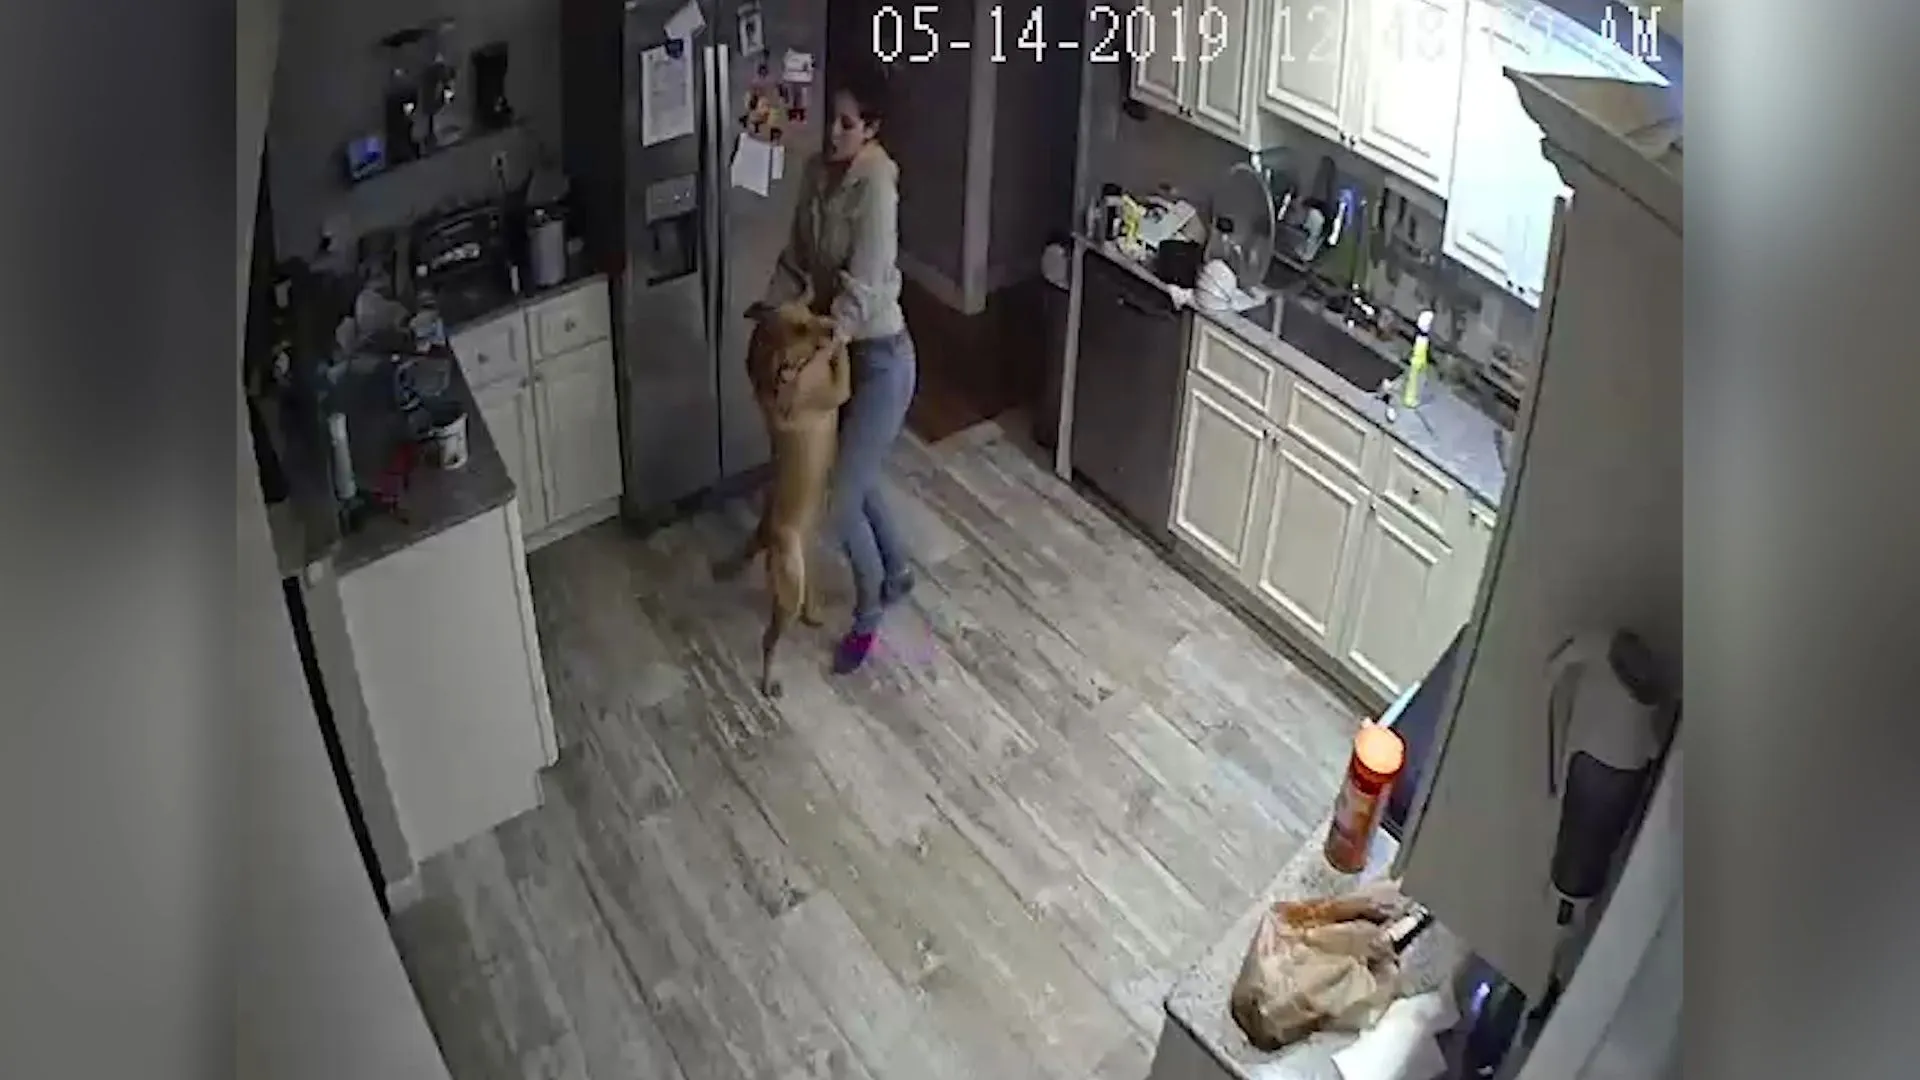 Une femme danse avec un chien et déclenche une alarme